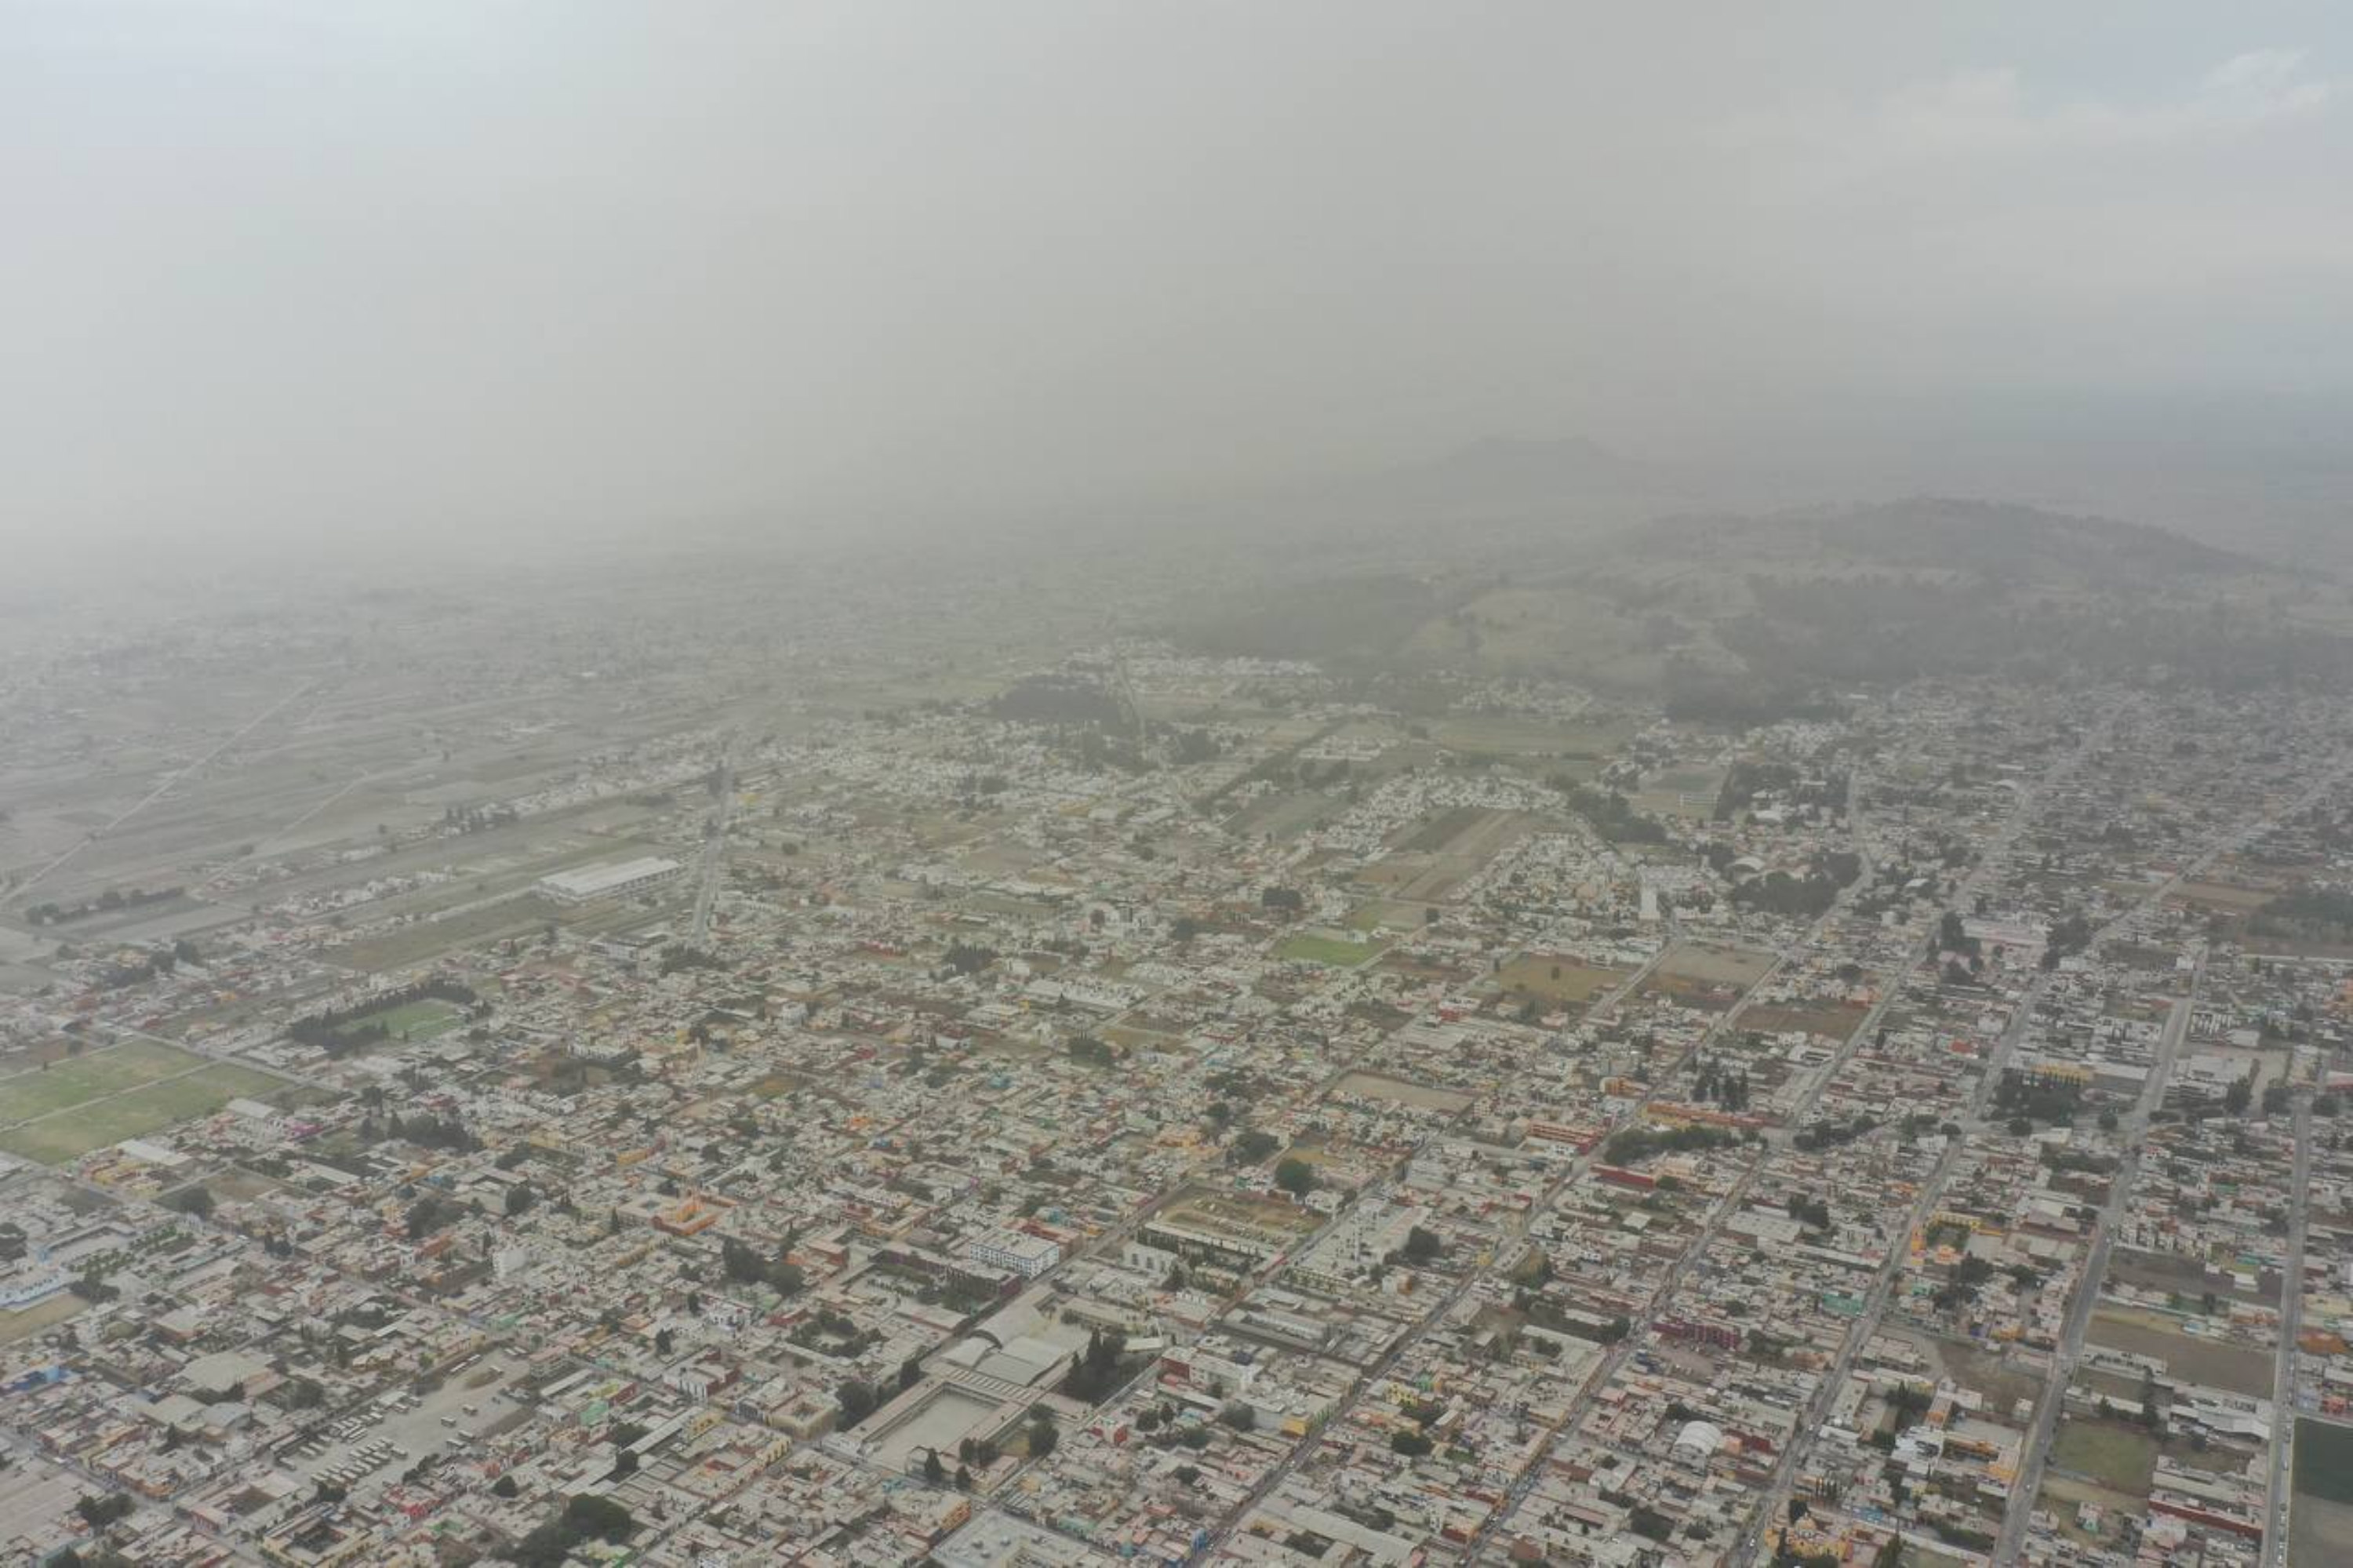 Registra picos altos de partículas PM 10 sur de la zona metropolitana de Puebla